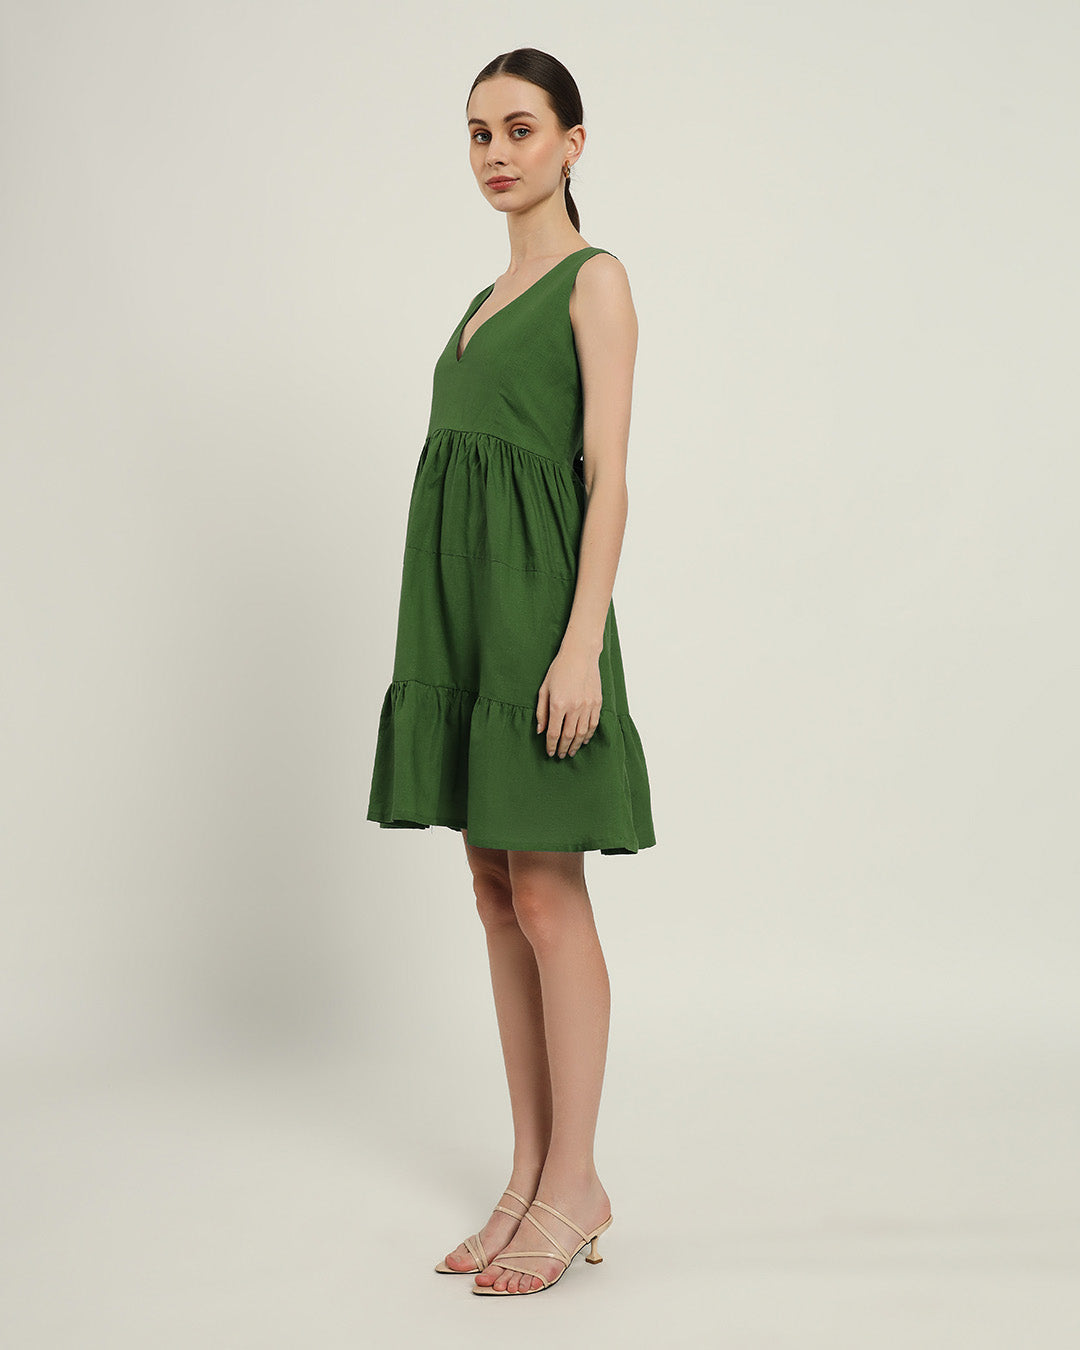 The Minsk Emerald Cotton Dress